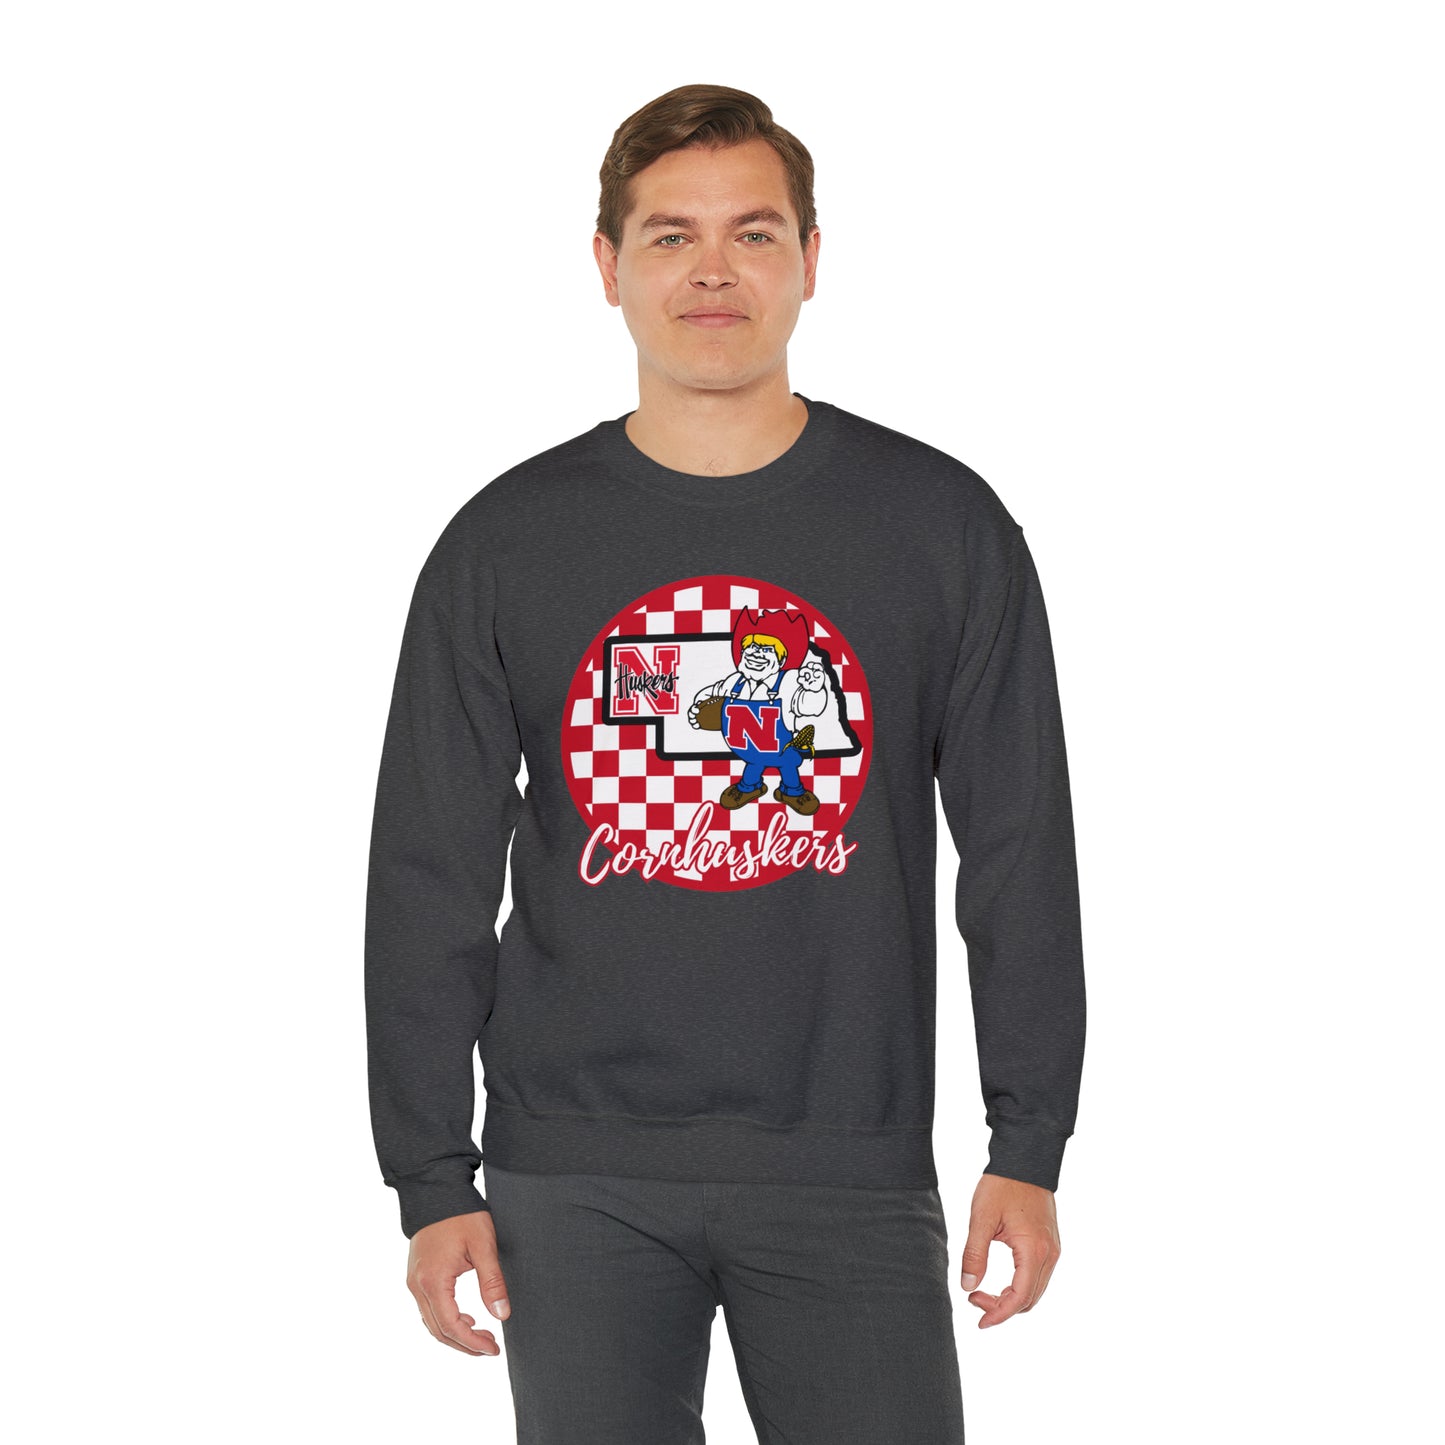 Nebraska Cornhuskers Checkered Sweatshirt